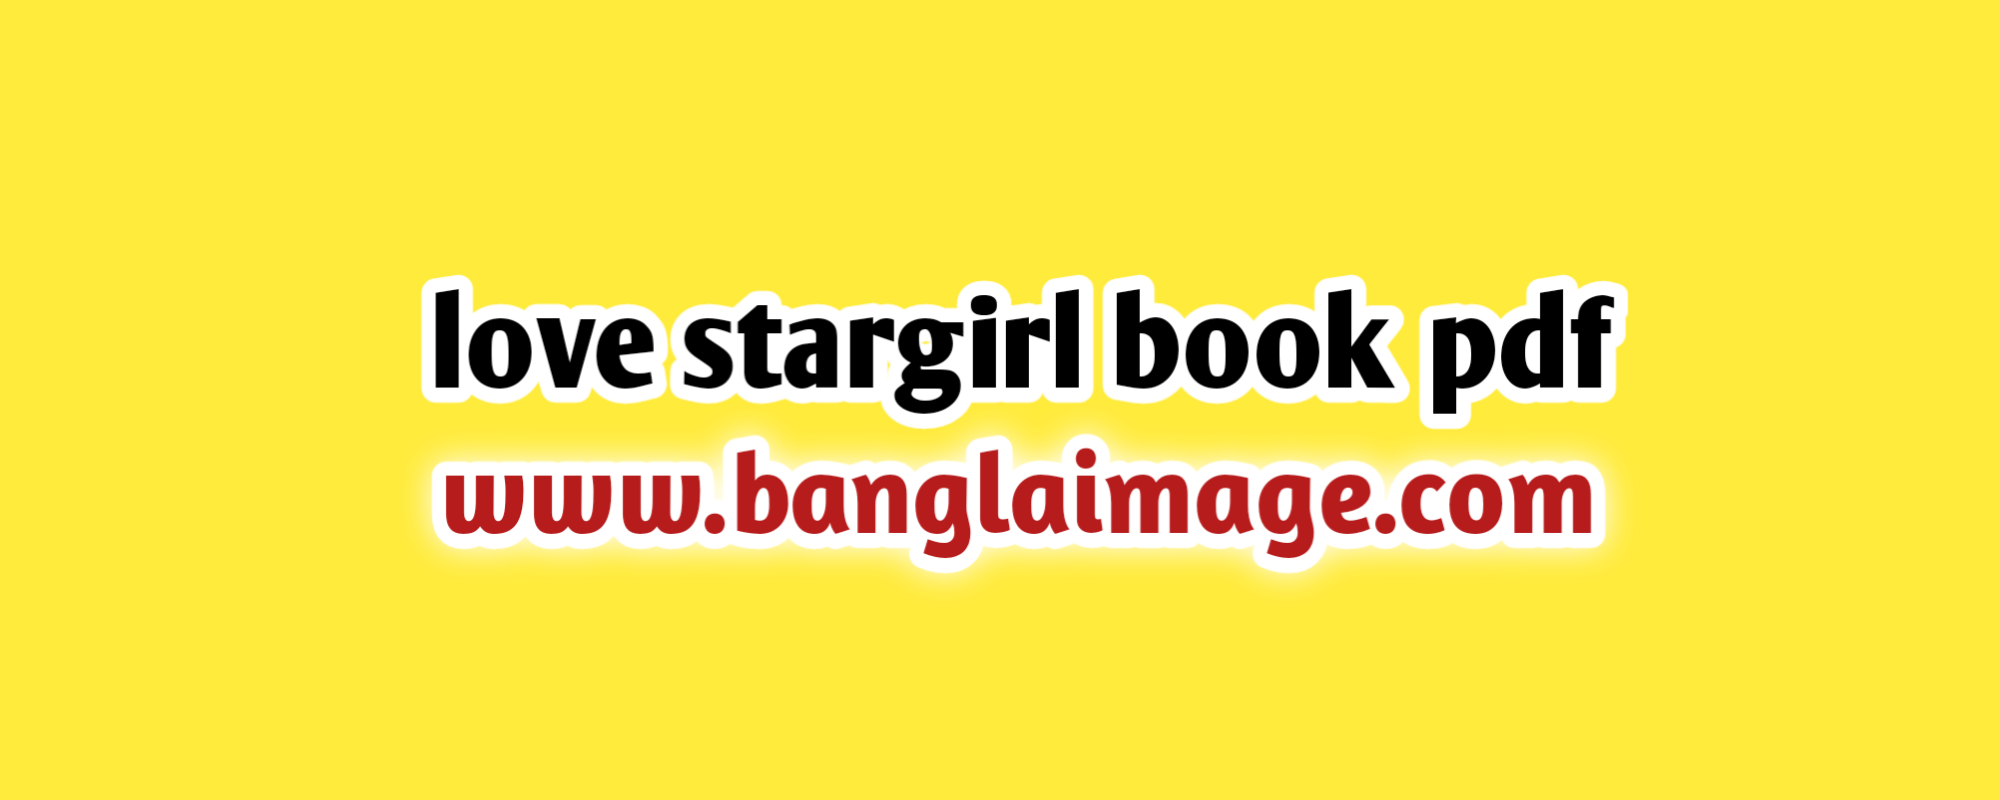 love stargirl book pdf, love stargirl book pdf online, love stargirl book pdf free, the love stargirl book pdf online